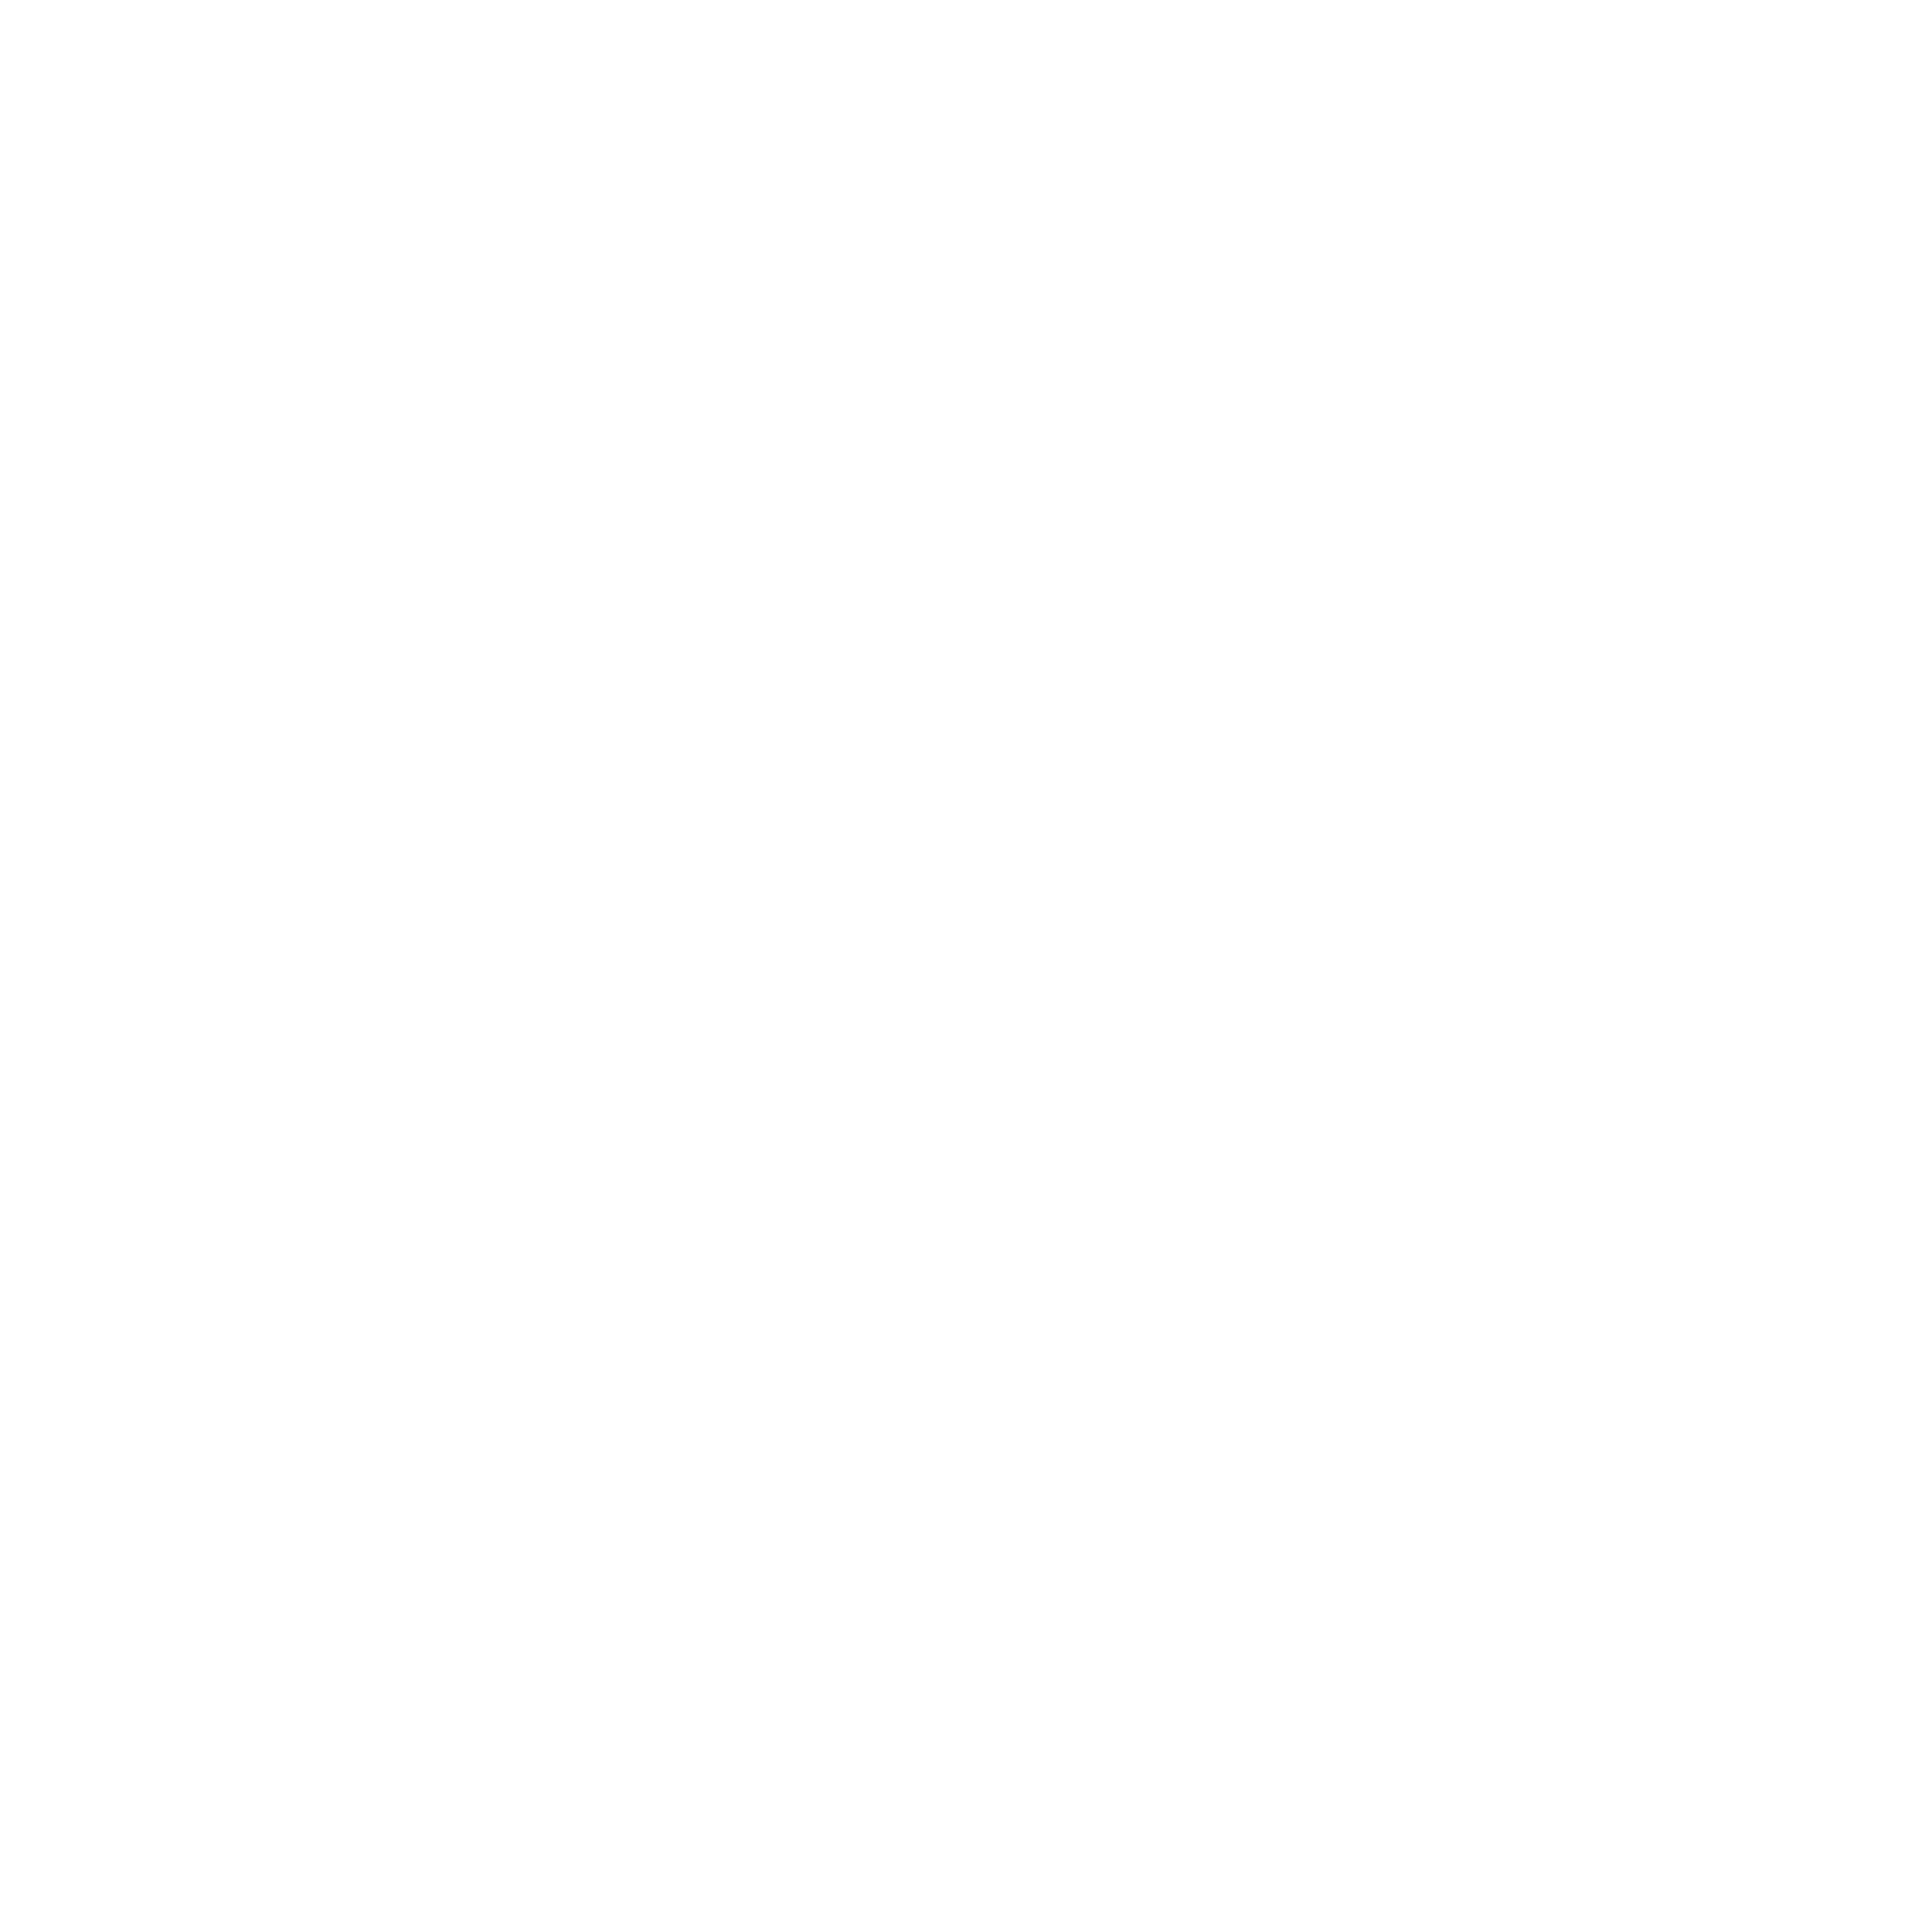 ETIGAGA